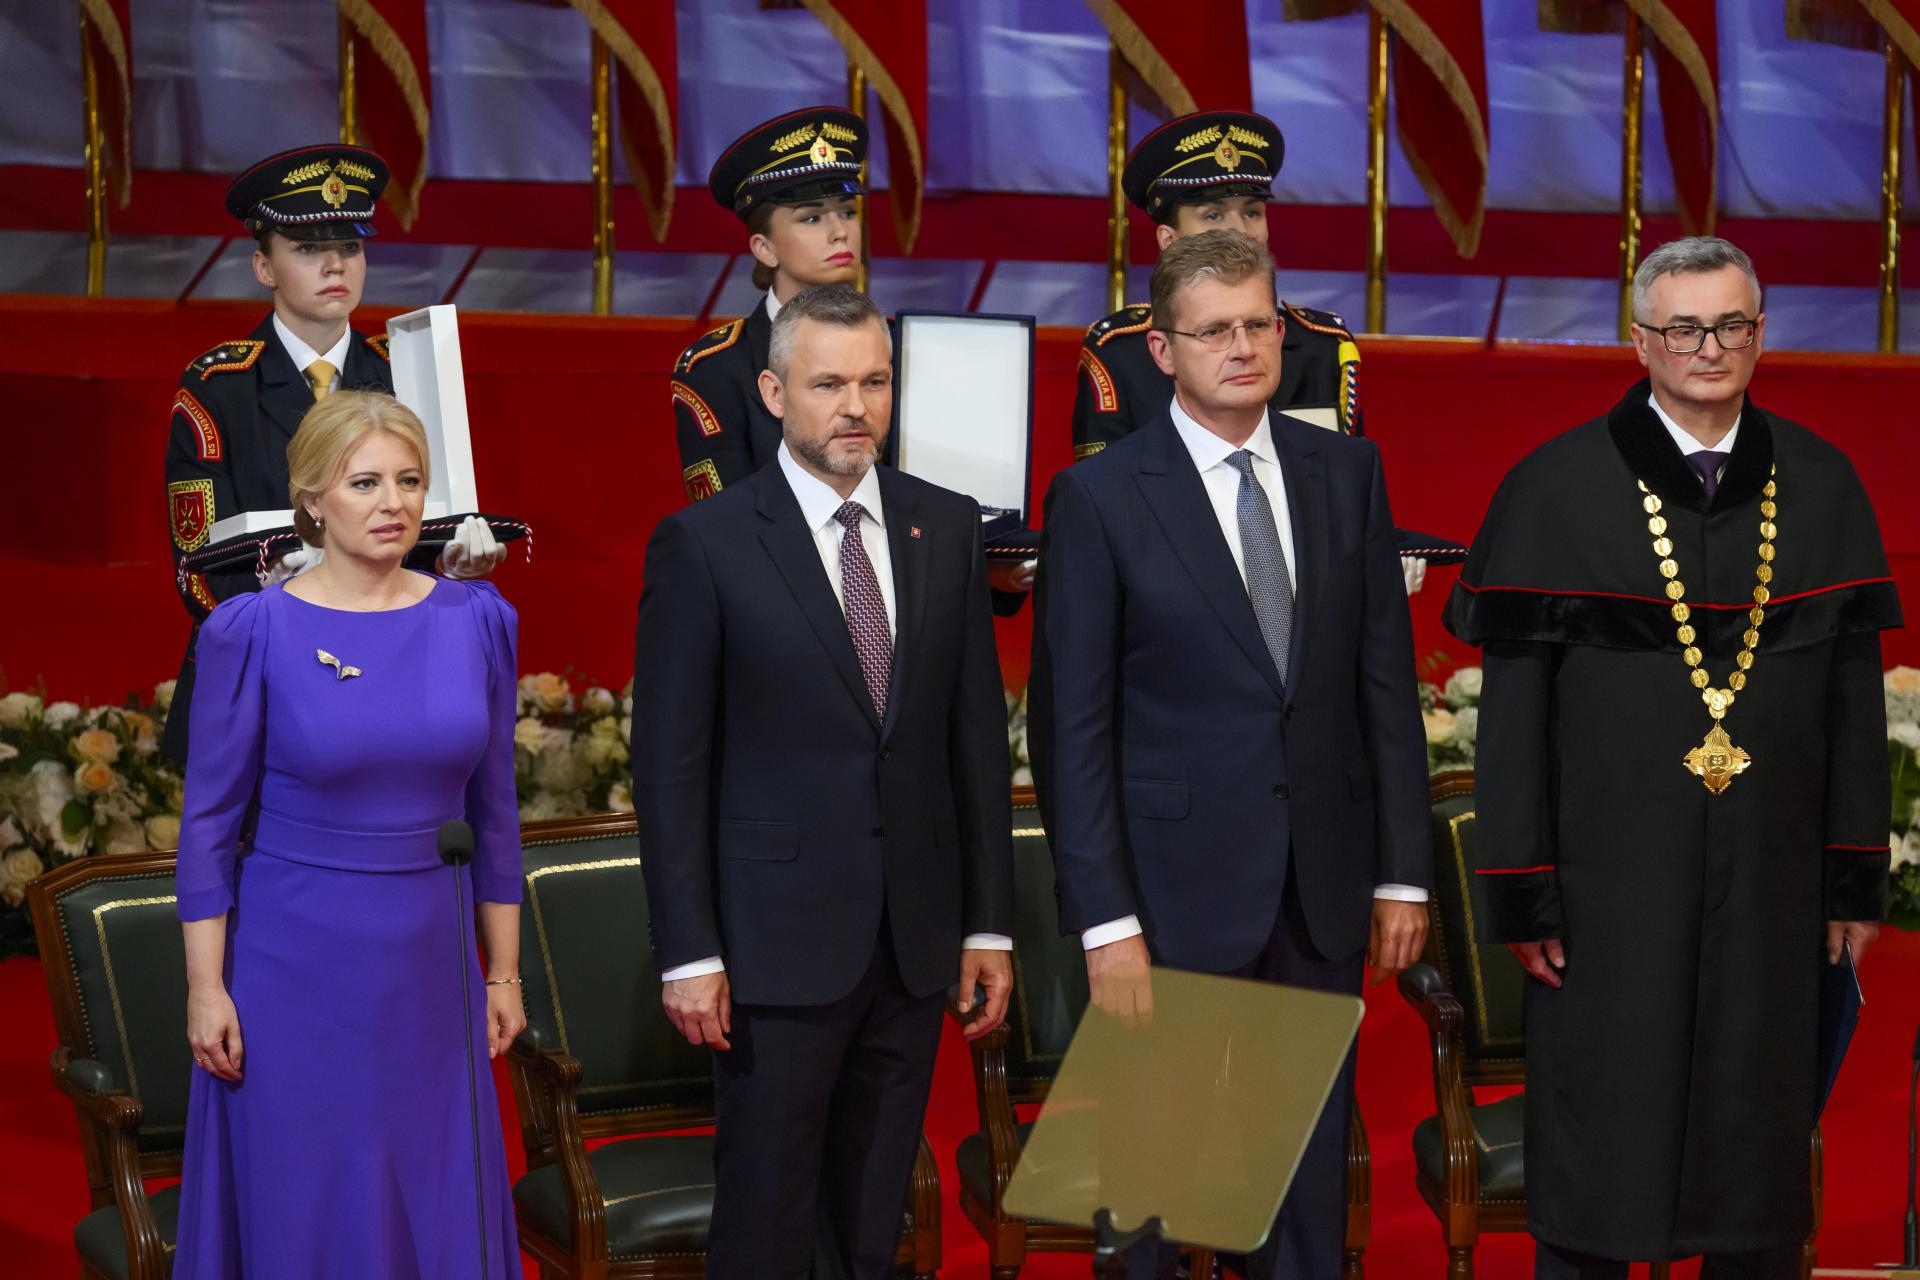 Čaputová praje Pellegrinimu úspešný mandát prezidenta. Slovensku želá pokojnenšie časy